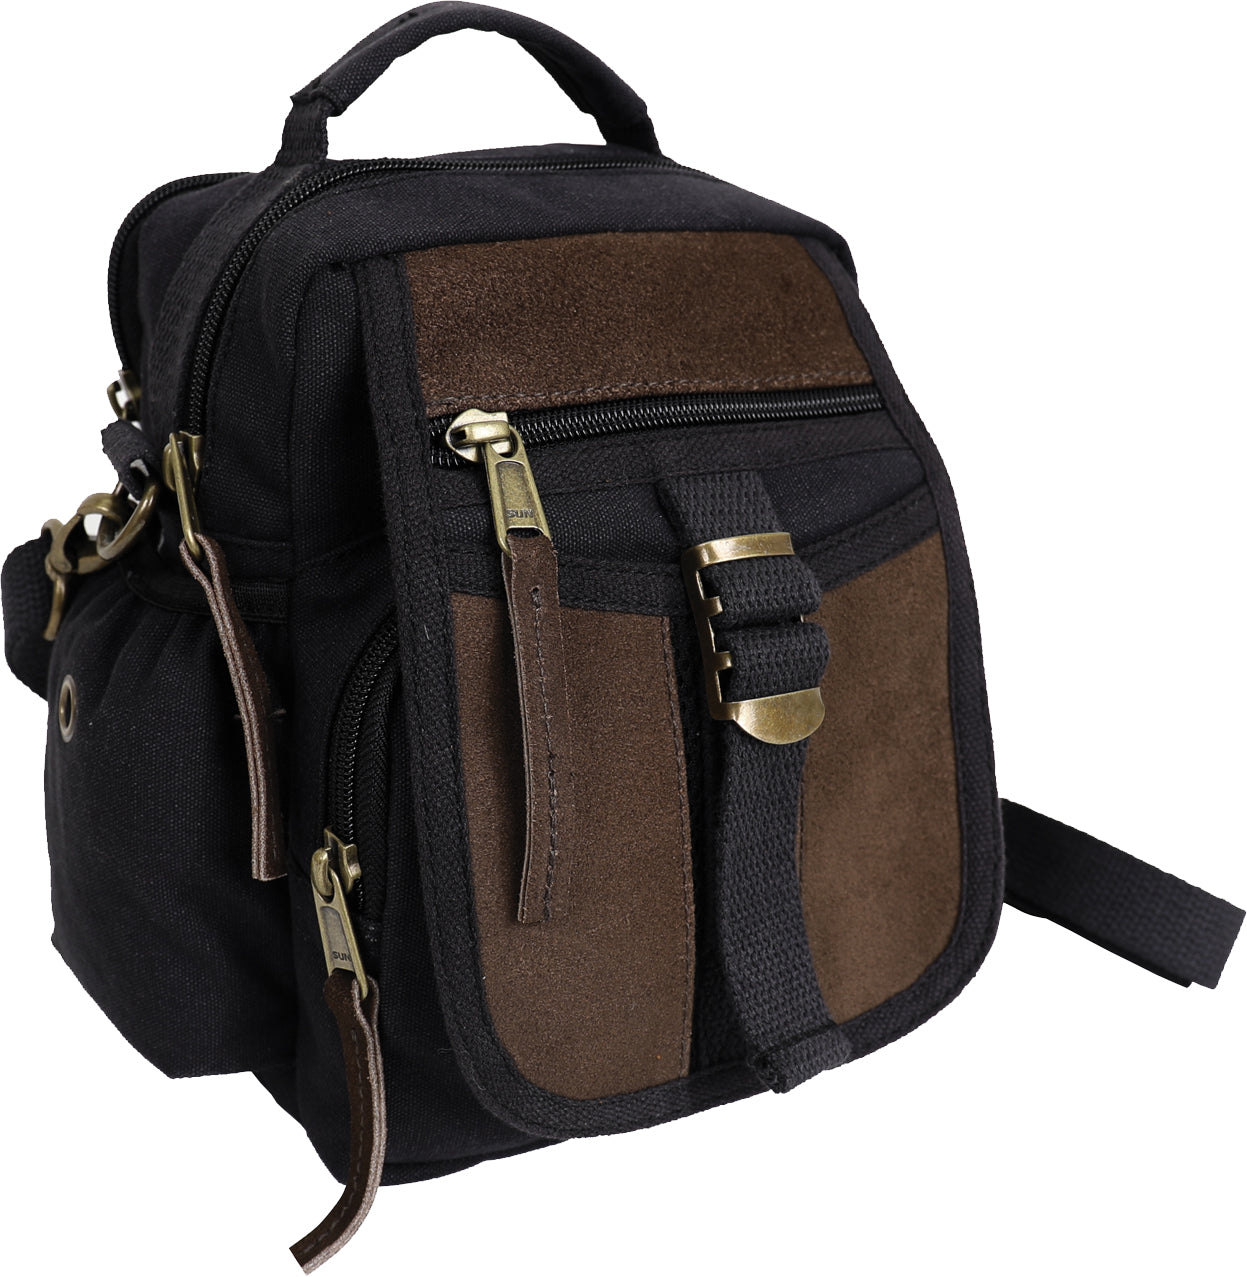 Black Canvas & Leather Travel Shoulder Bag